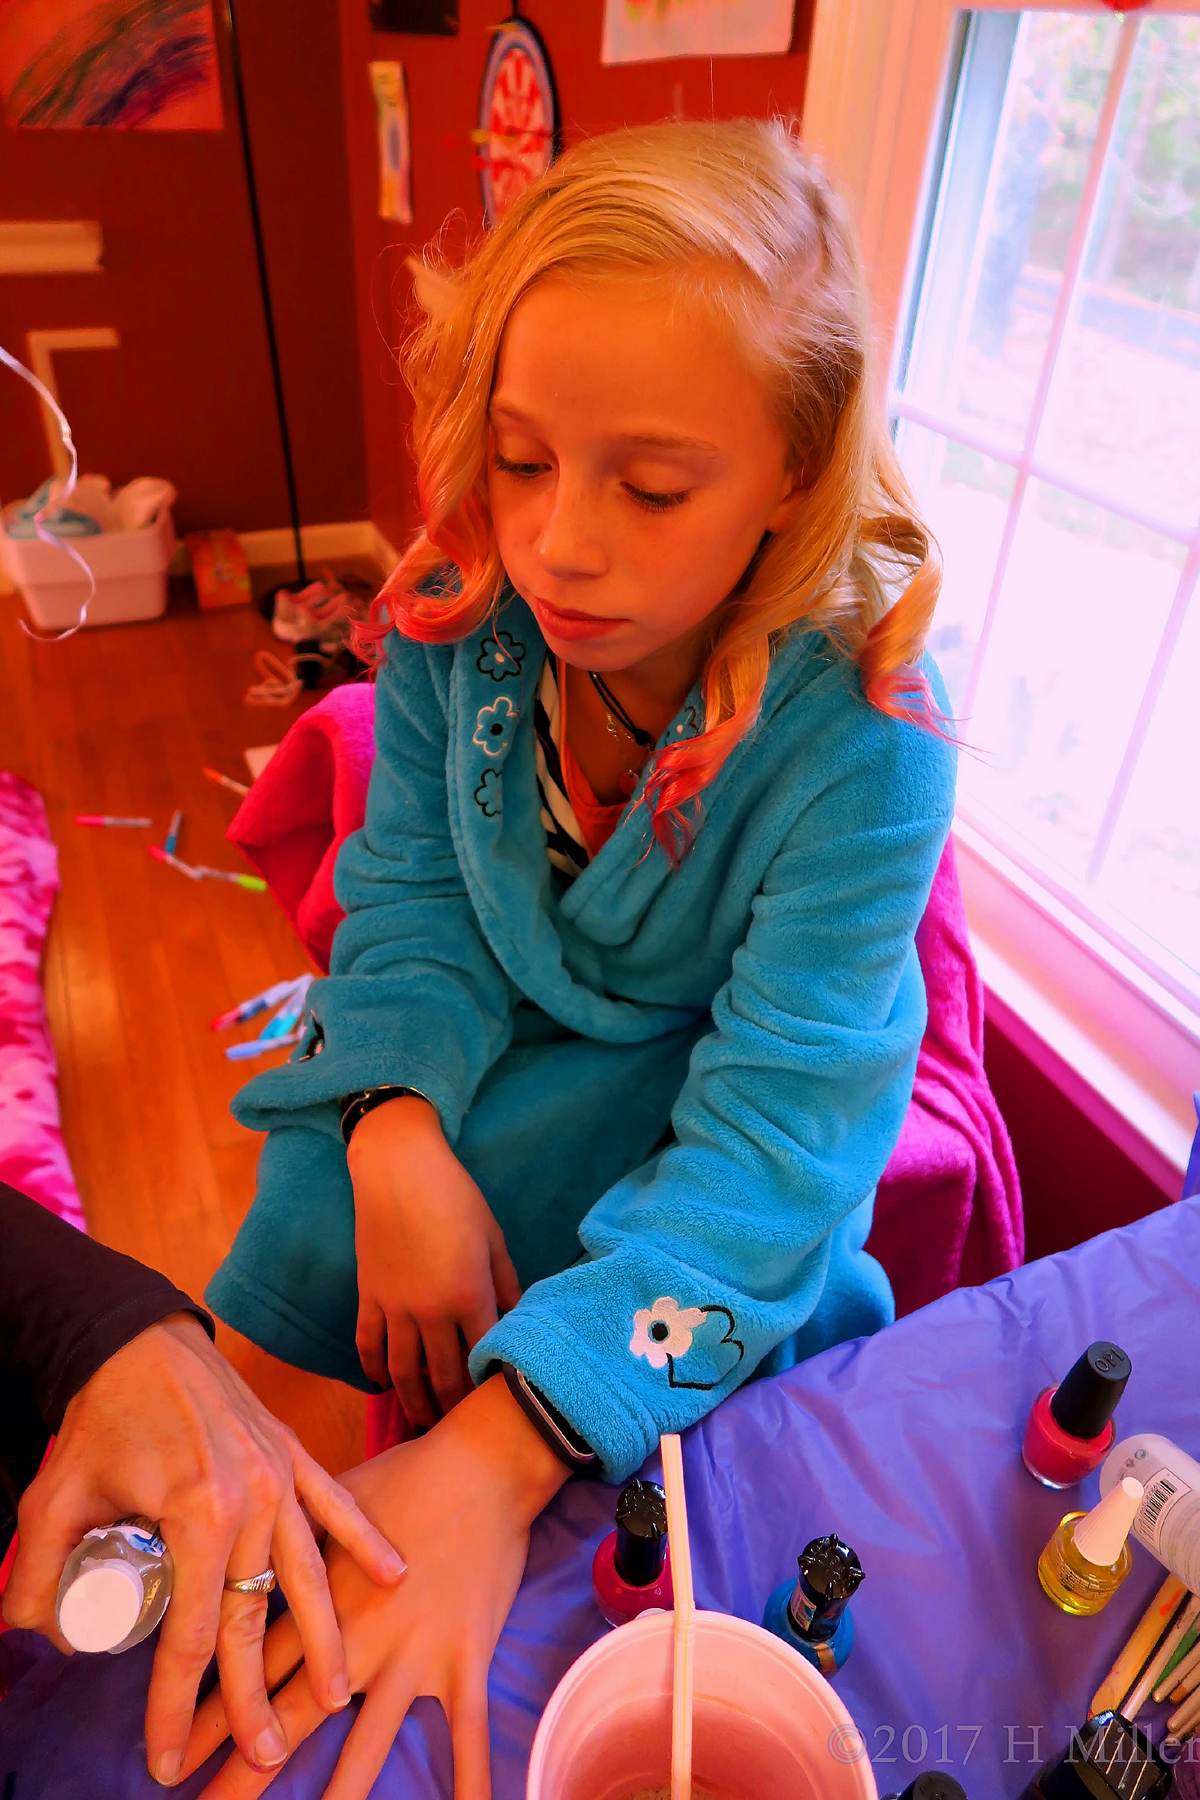 Getting A Super Cool Kids Manicure 